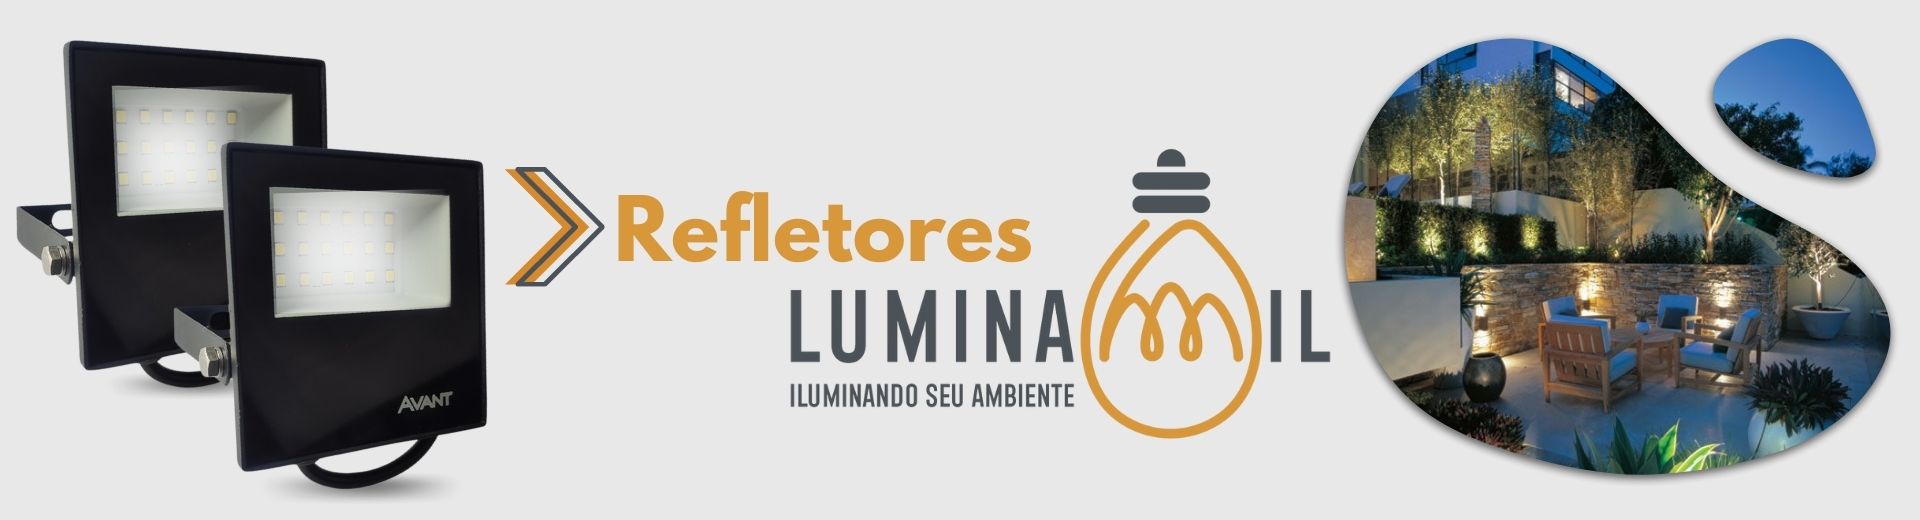 Luminamil - Banner Principal - Refletores